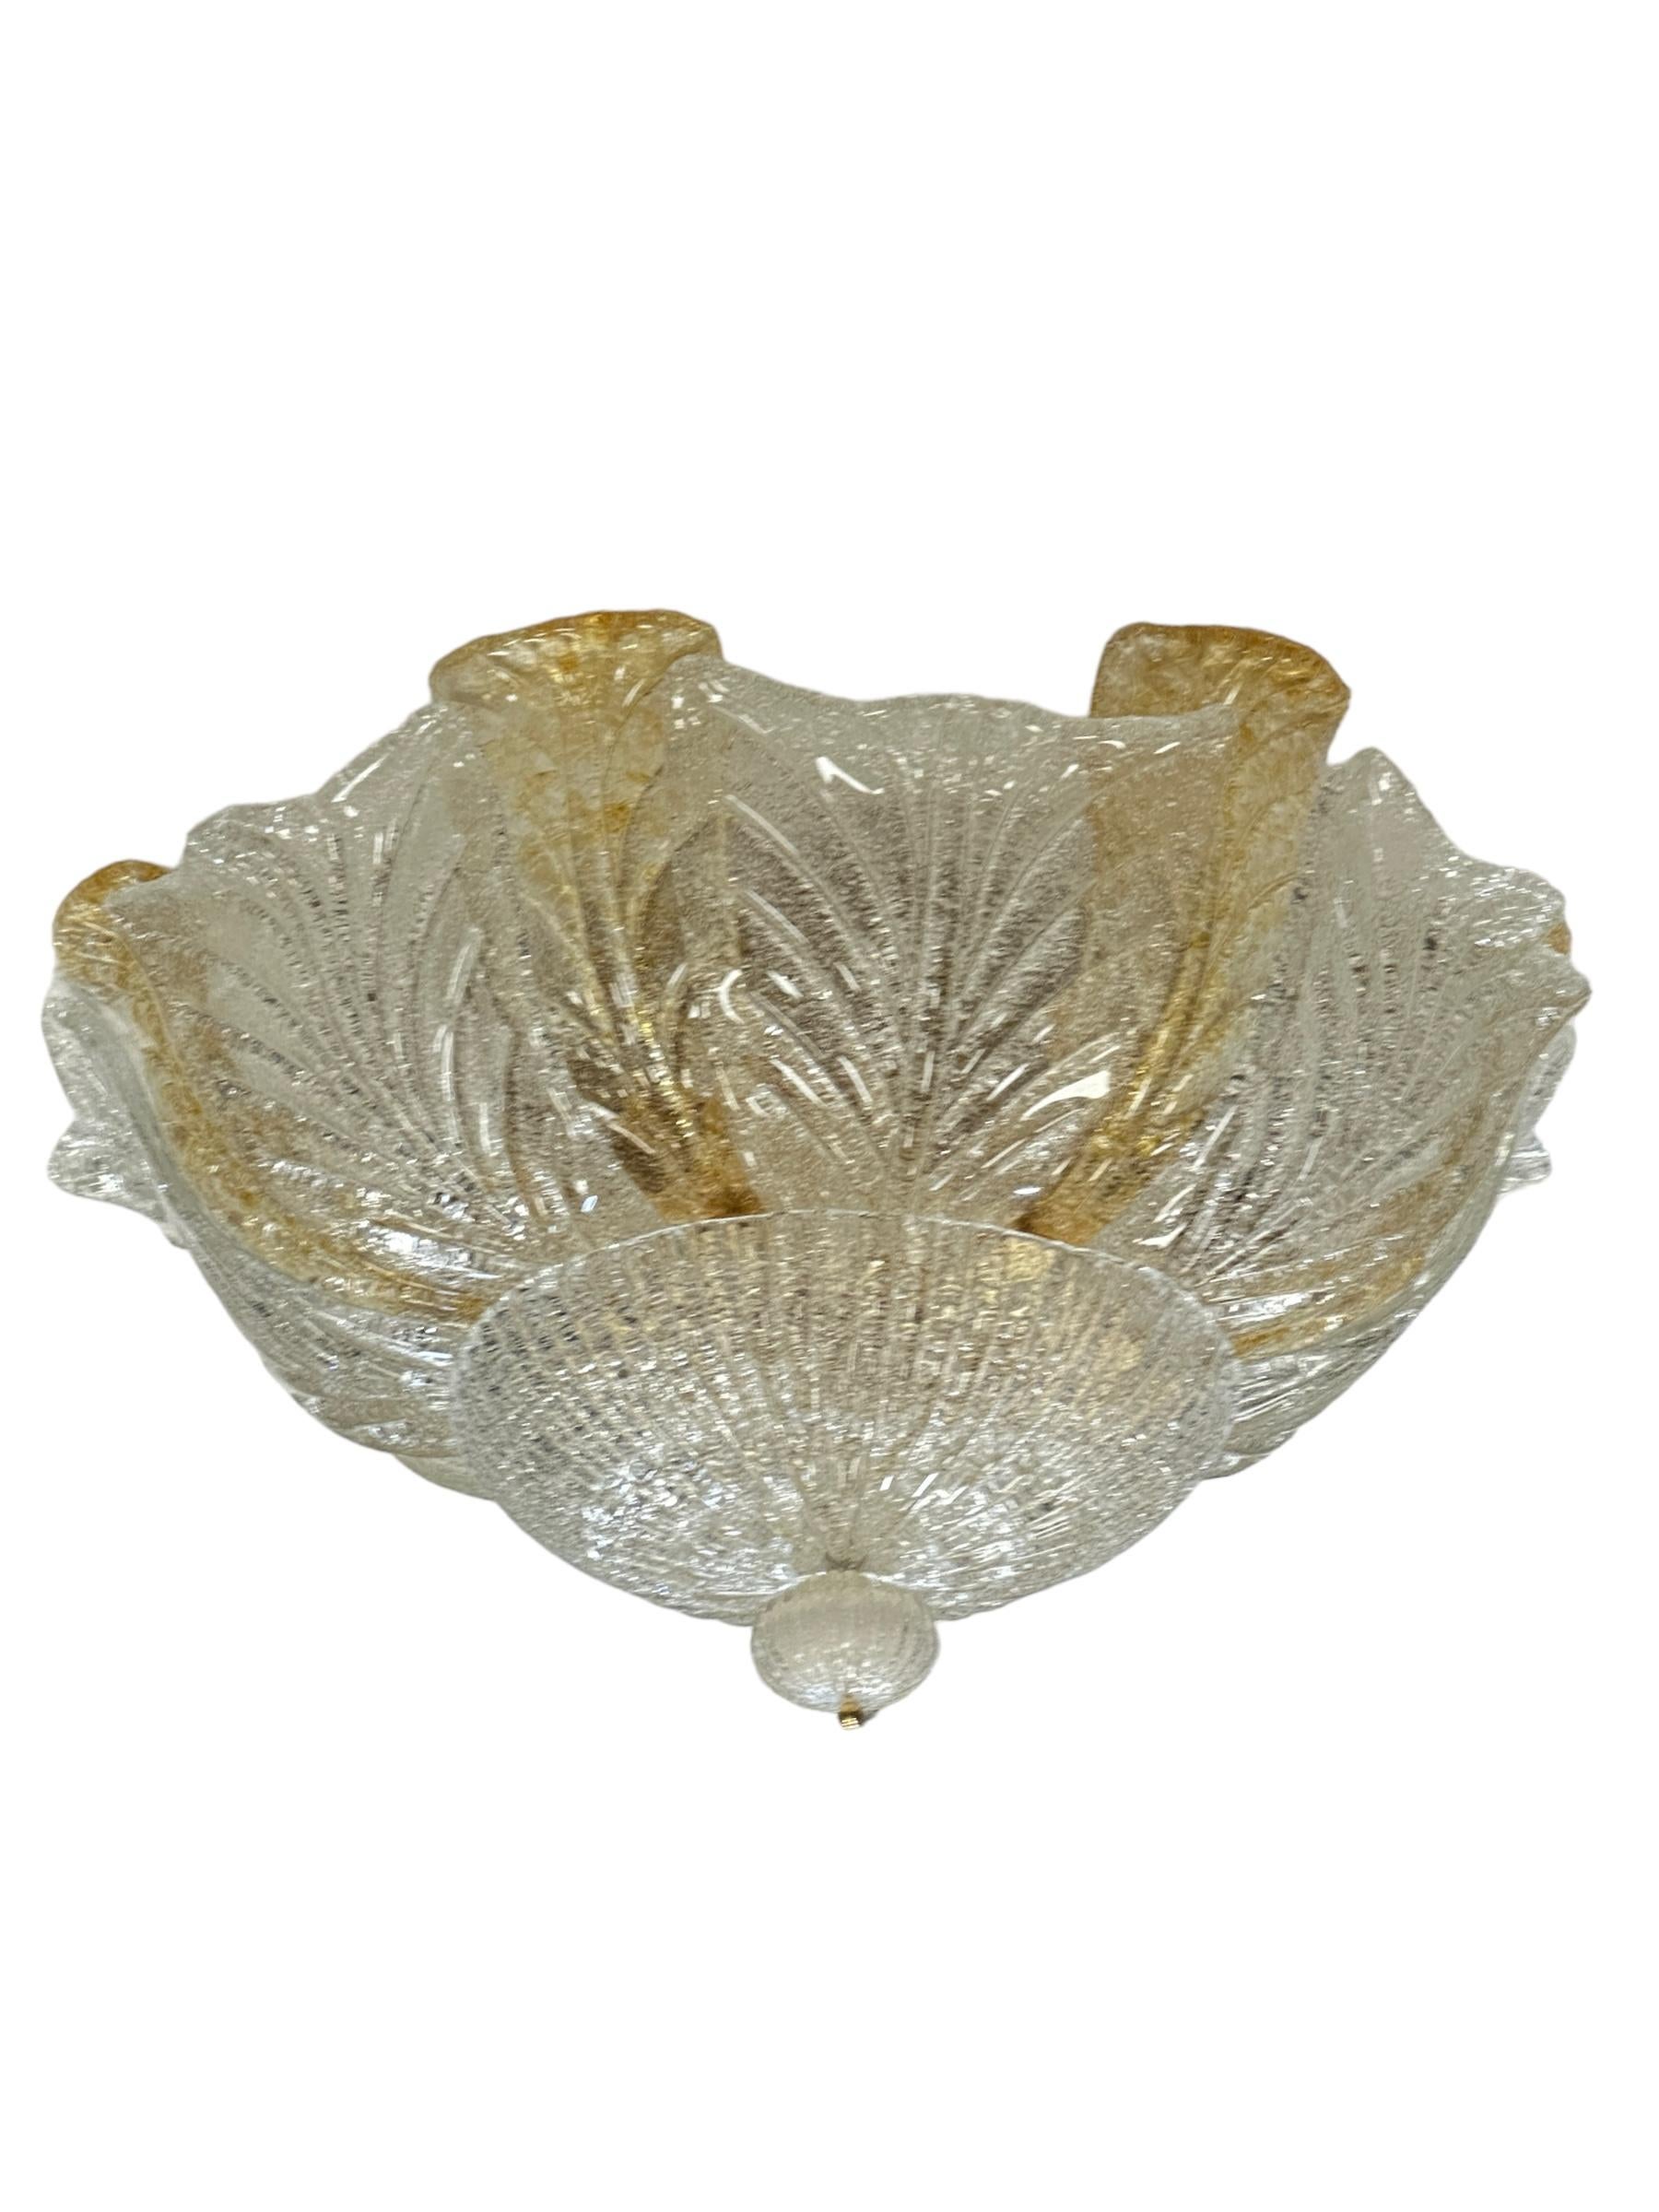 Un grand lustre du milieu du siècle en verre de Murano, avec des feuilles de verre texturées et incurvées sur une grande plaque de montage avec un anneau en métal lourd. Quatorze disques incurvés en verre de Murano, sept en verre clair et sept plus